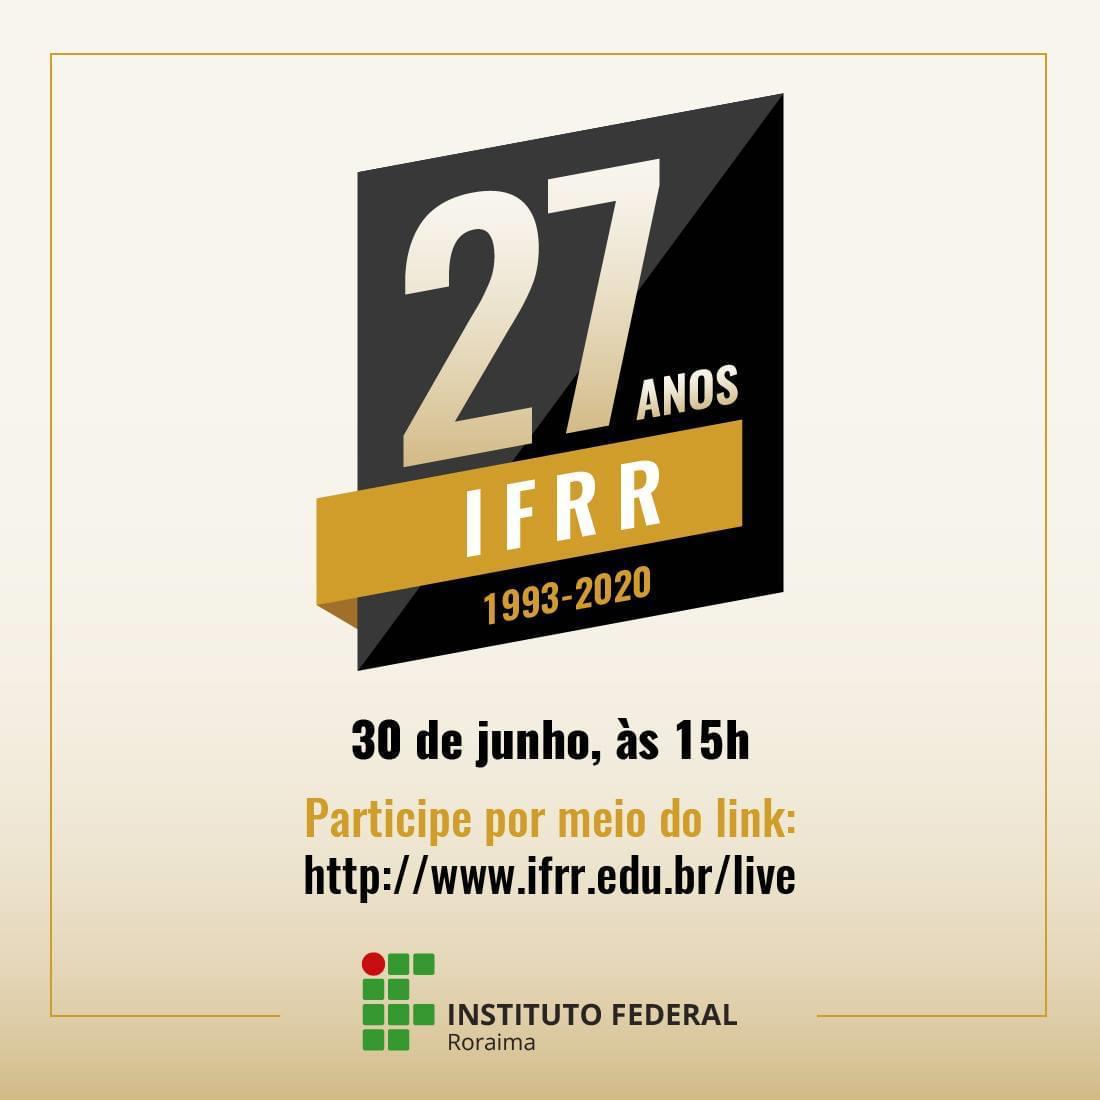 Cerimônia virtual vai celebrar 27 anos do IFRR